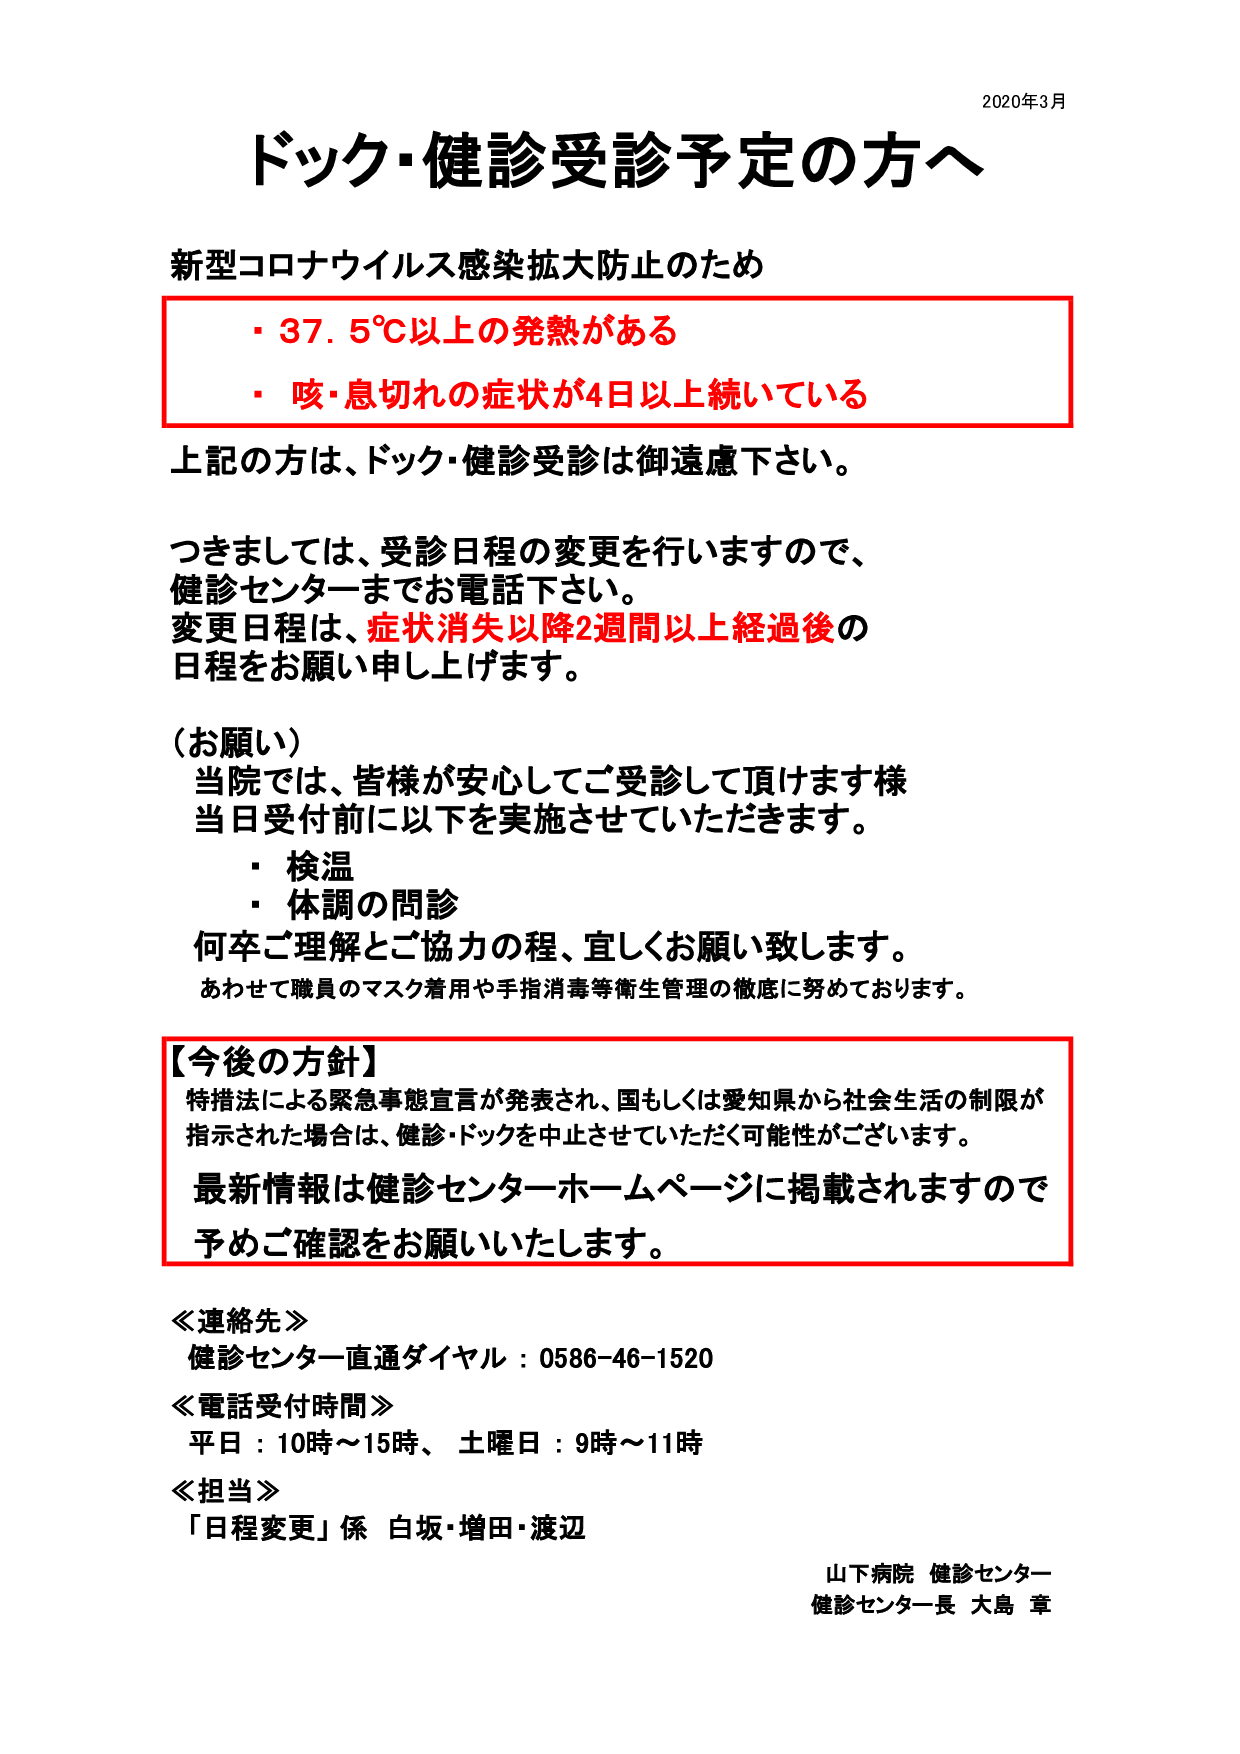 愛知 県 コロナ 感染 情報